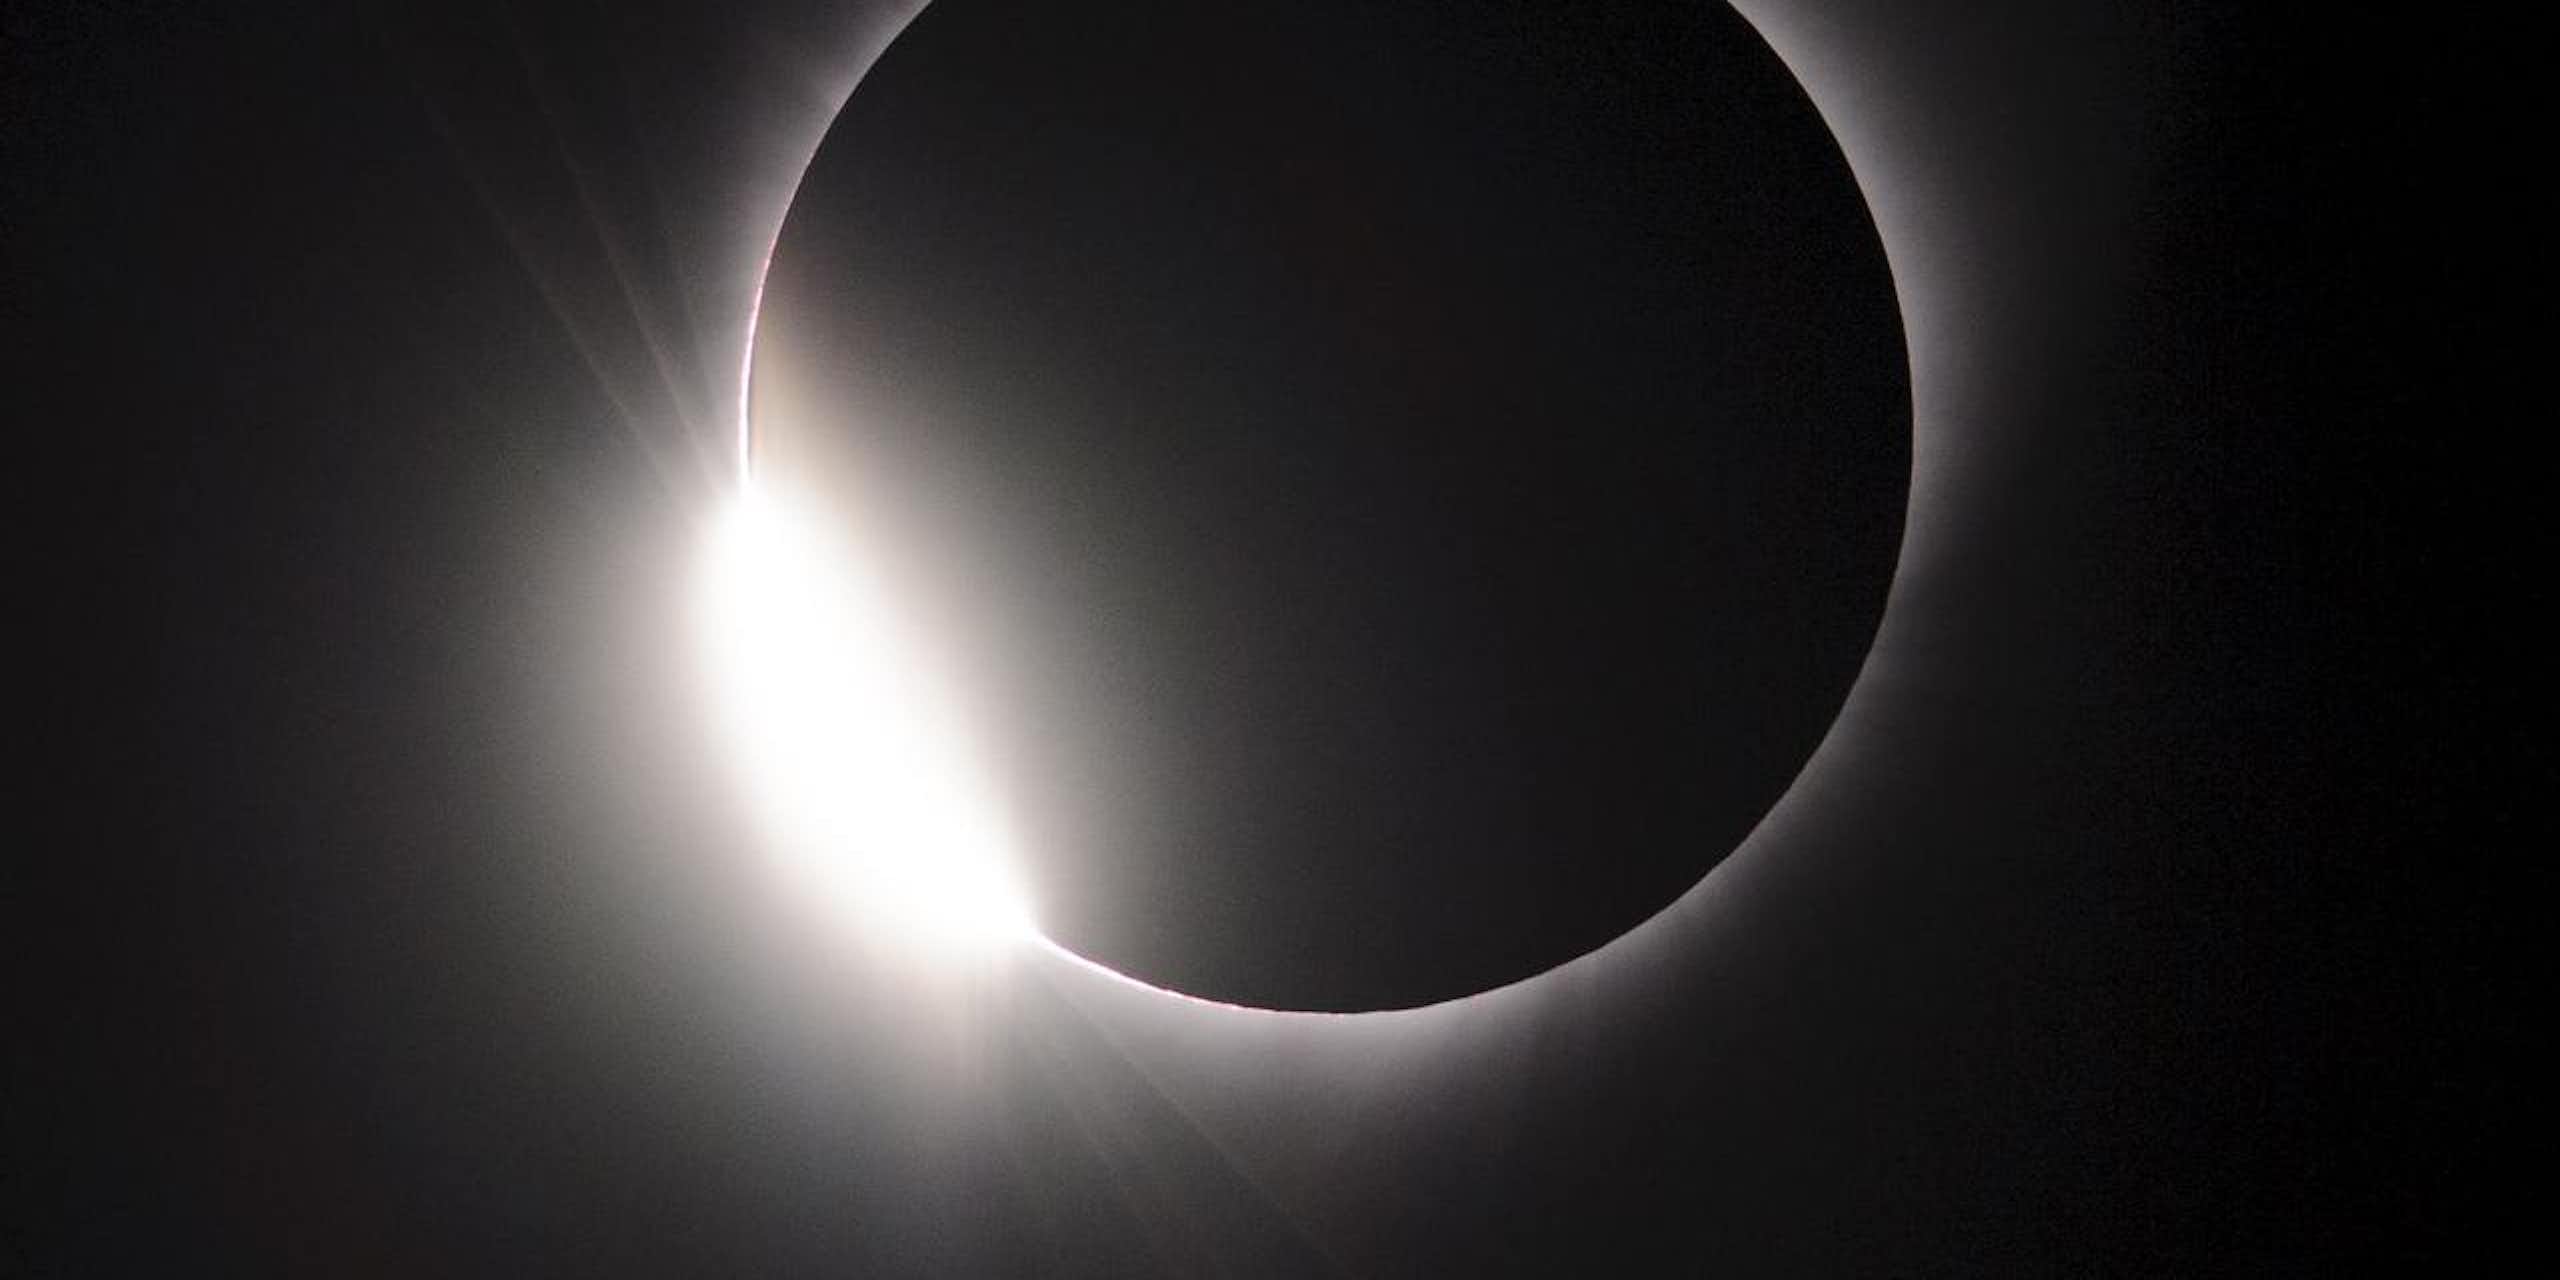 un cercle noir entouré d'un halo lumineux blanc sur fond sombre